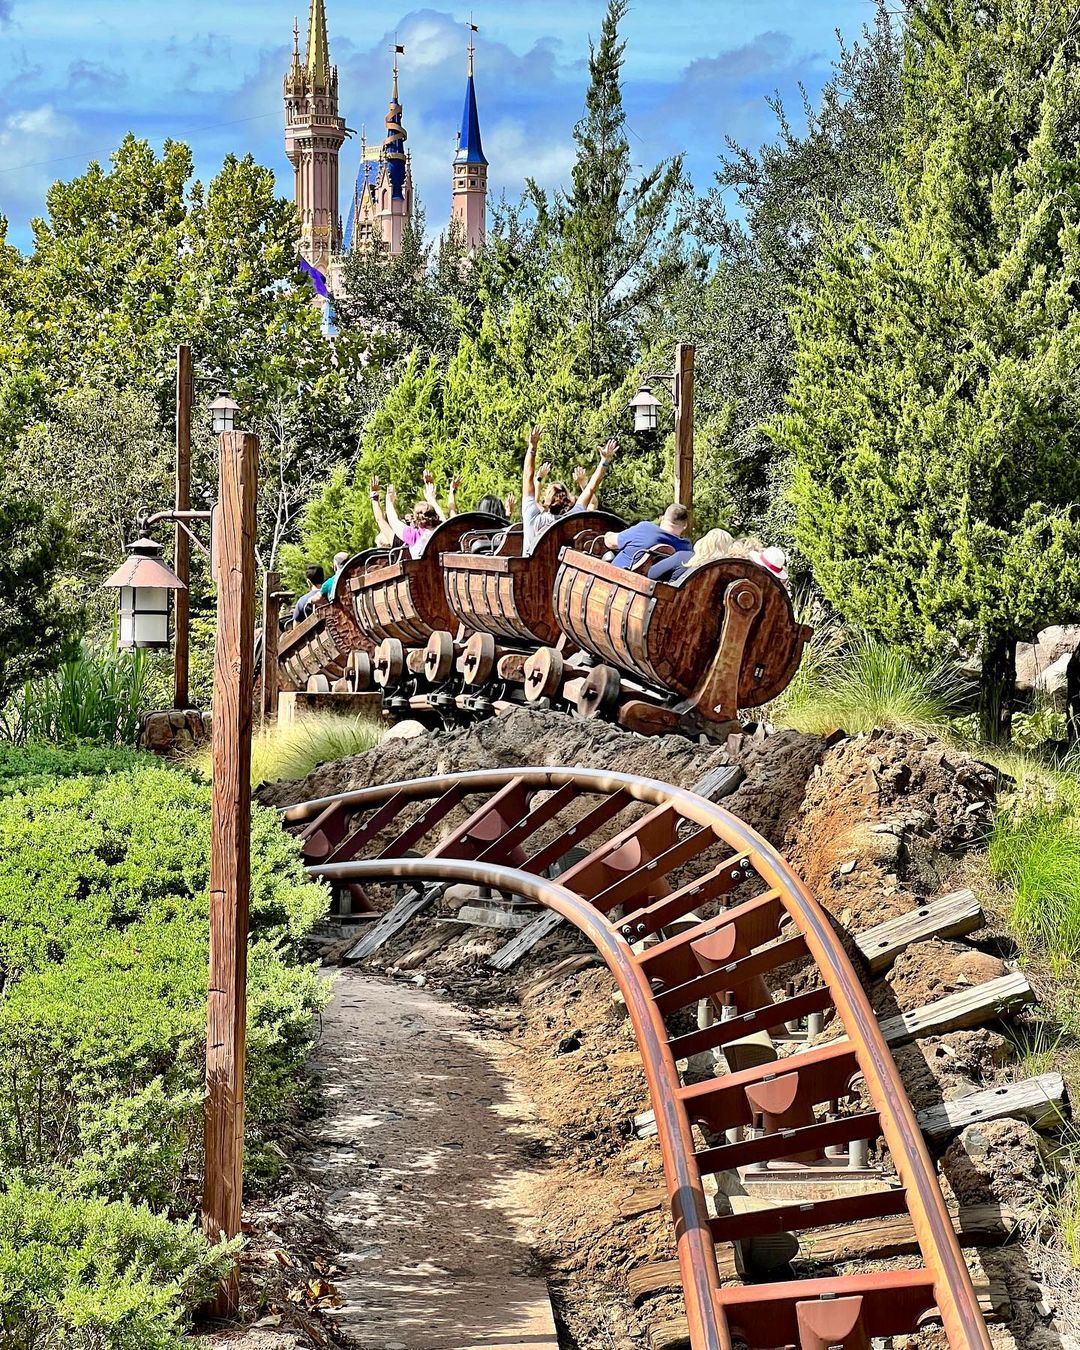 Seven Dwarfs Mine Train - Familienachterbahn im Magic Kingdom